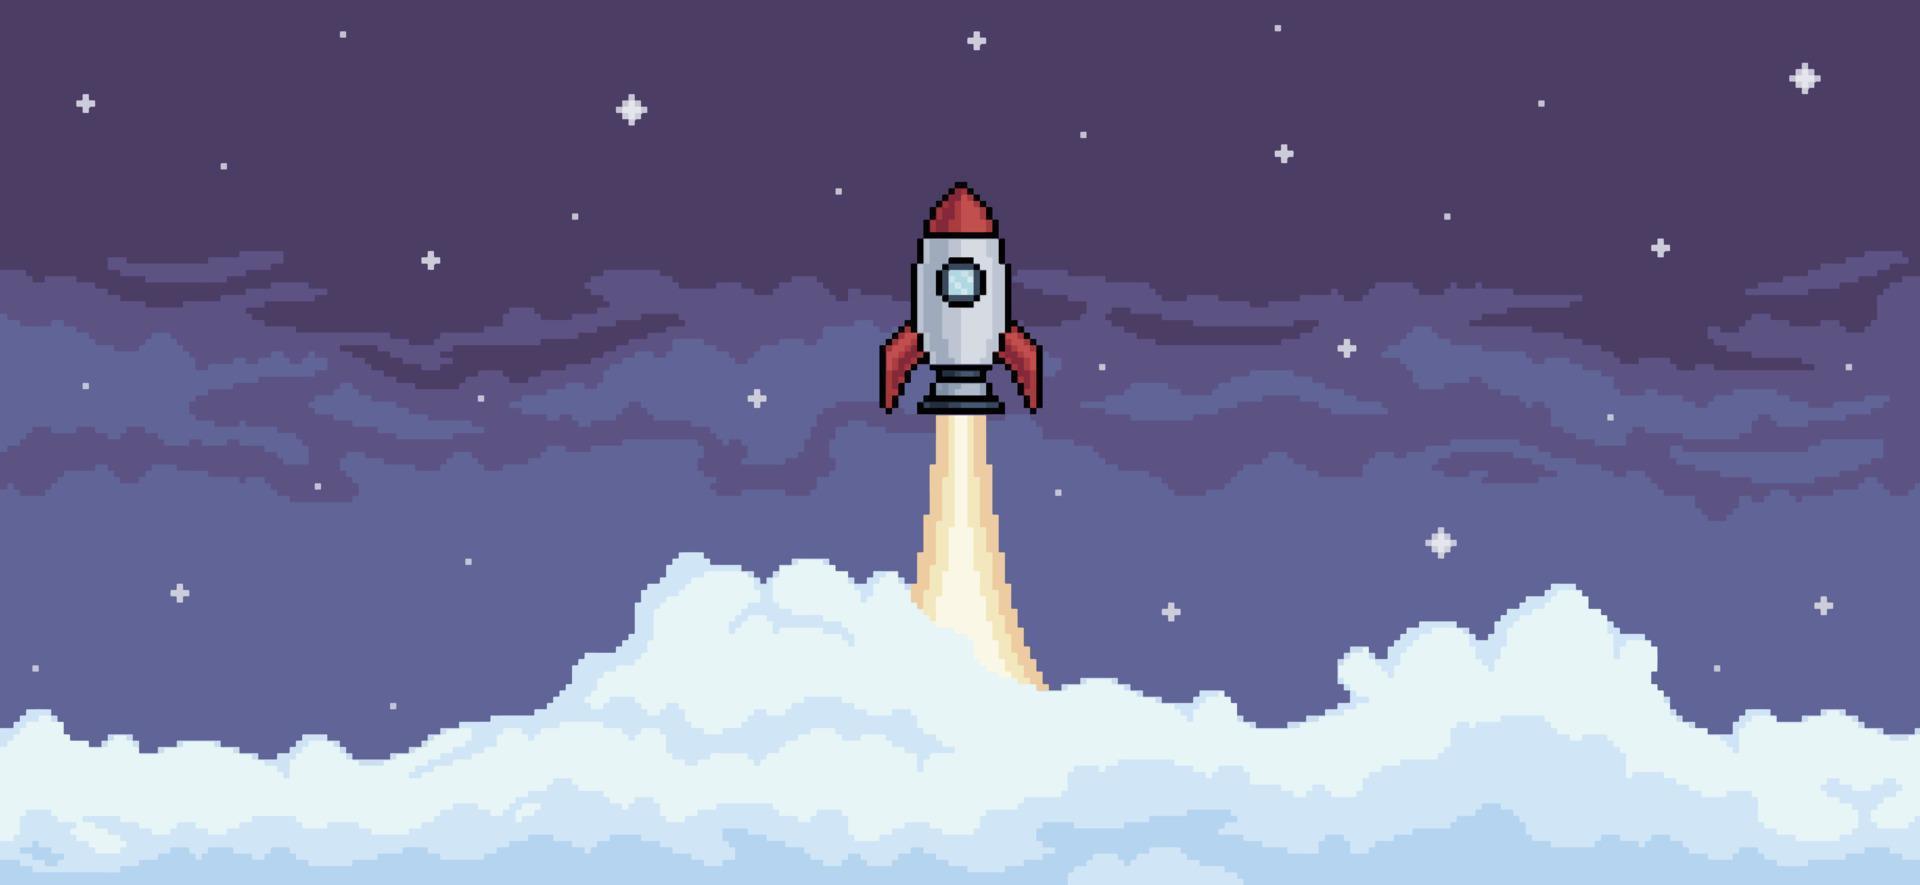 fundo de pixel art com foguete voando no céu noturno com vetor de fundo de nuvens para jogo de 8 bits